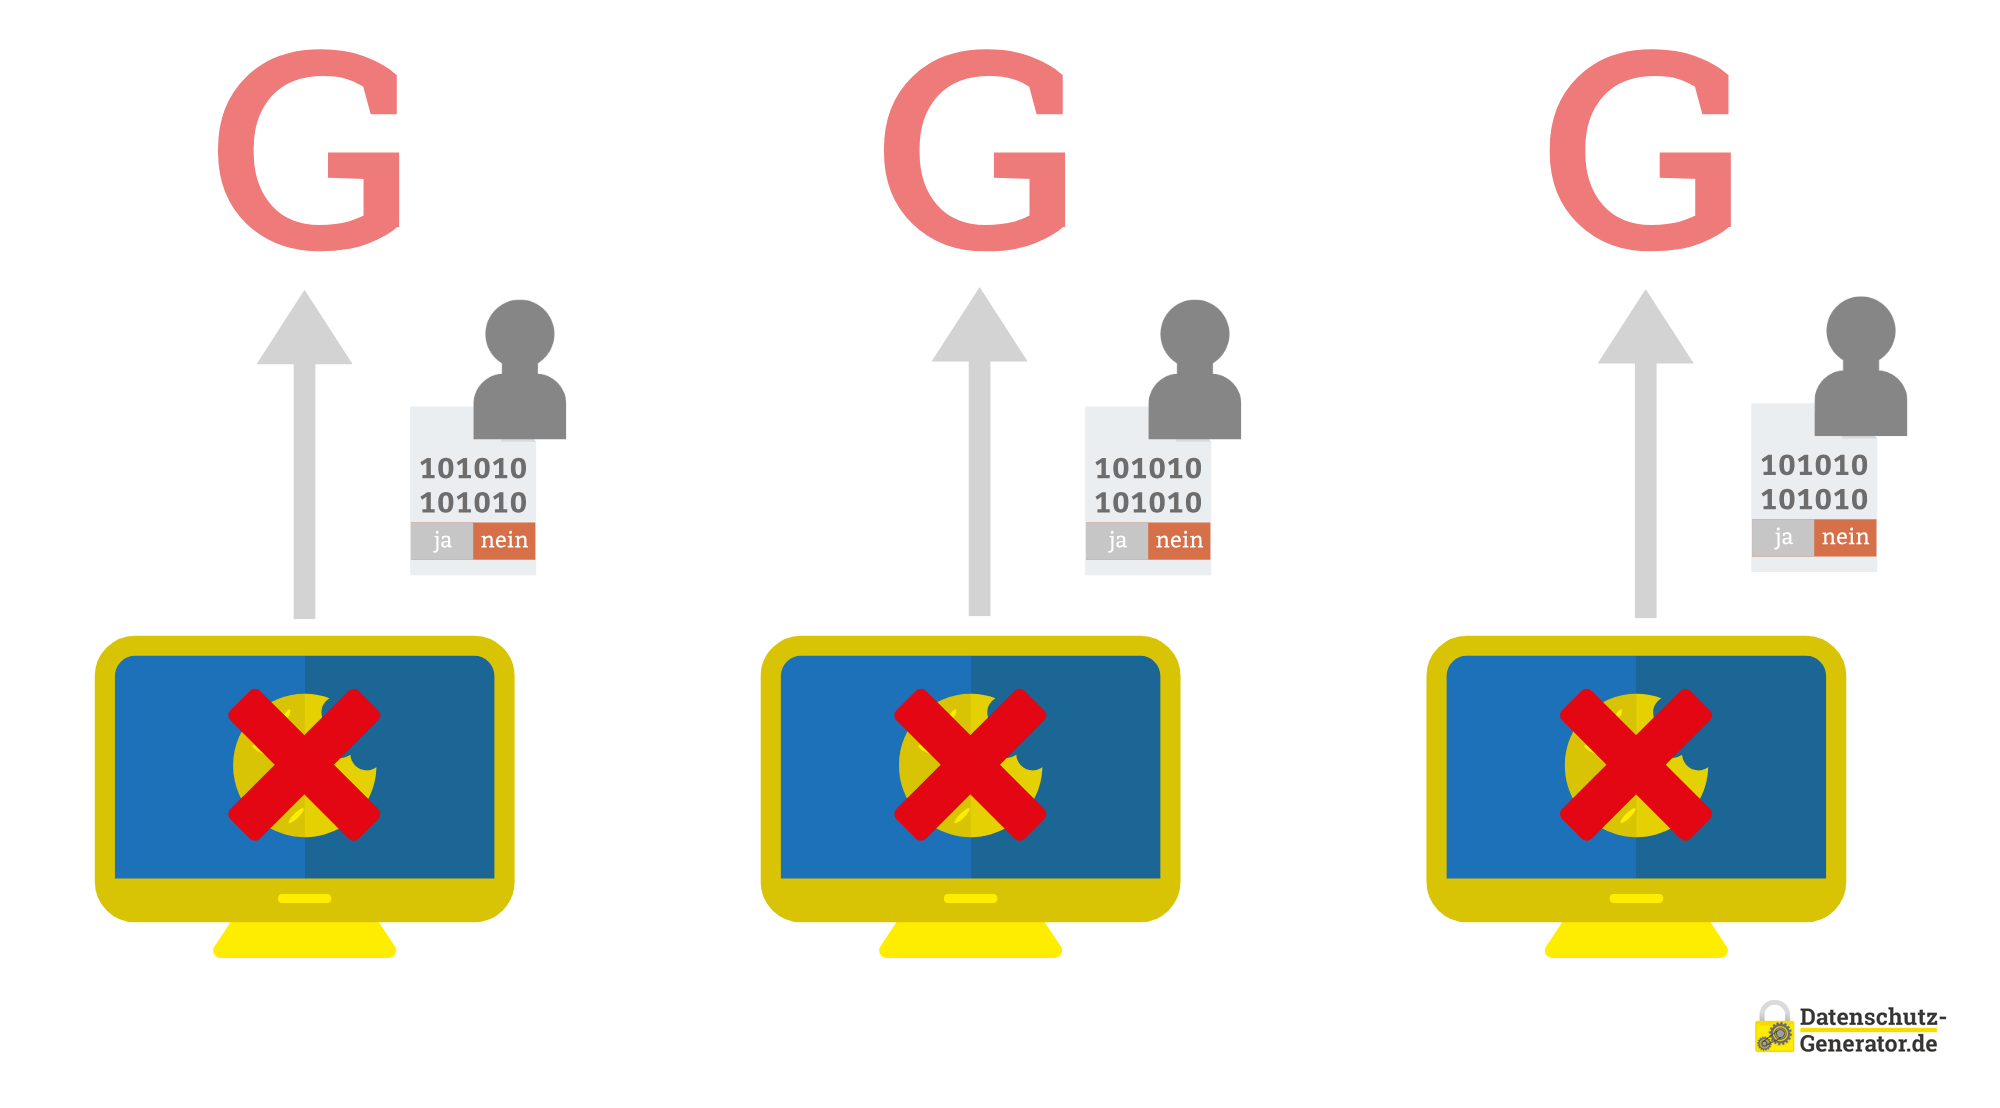 Schematische Darstellung des Consent-Modes ohne Tracking mit einem roten 'G' oben, drei User-Icons mit Binärcode, die alle die Nein-Option gewählt haben, welche rot unterlegt ist, und drei Monitoren mit einem roten 'X' über dem gelben Cookie-Symbol.